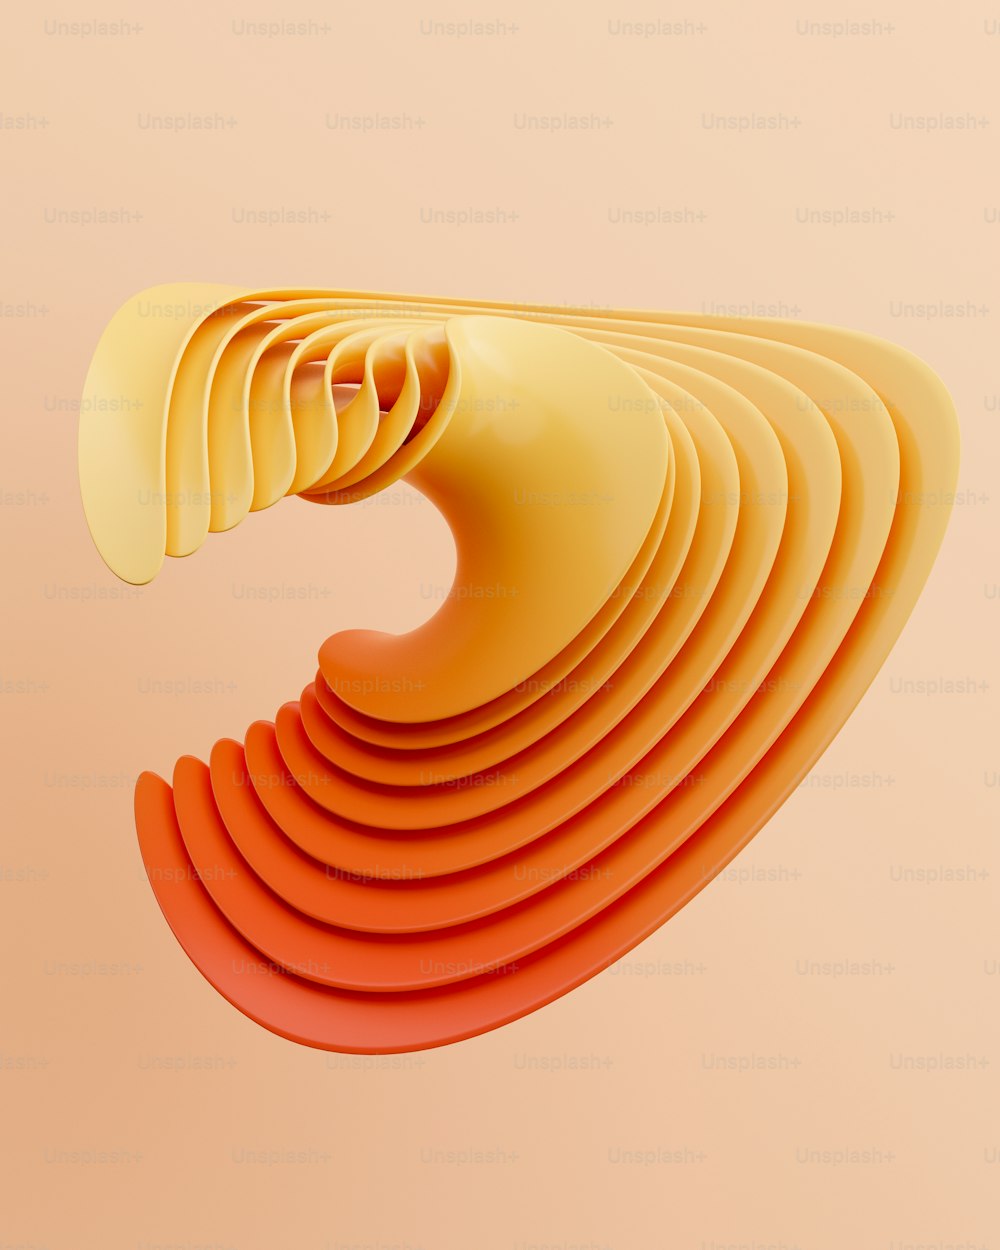 湾曲したオレンジ色の物体の抽象的な画像